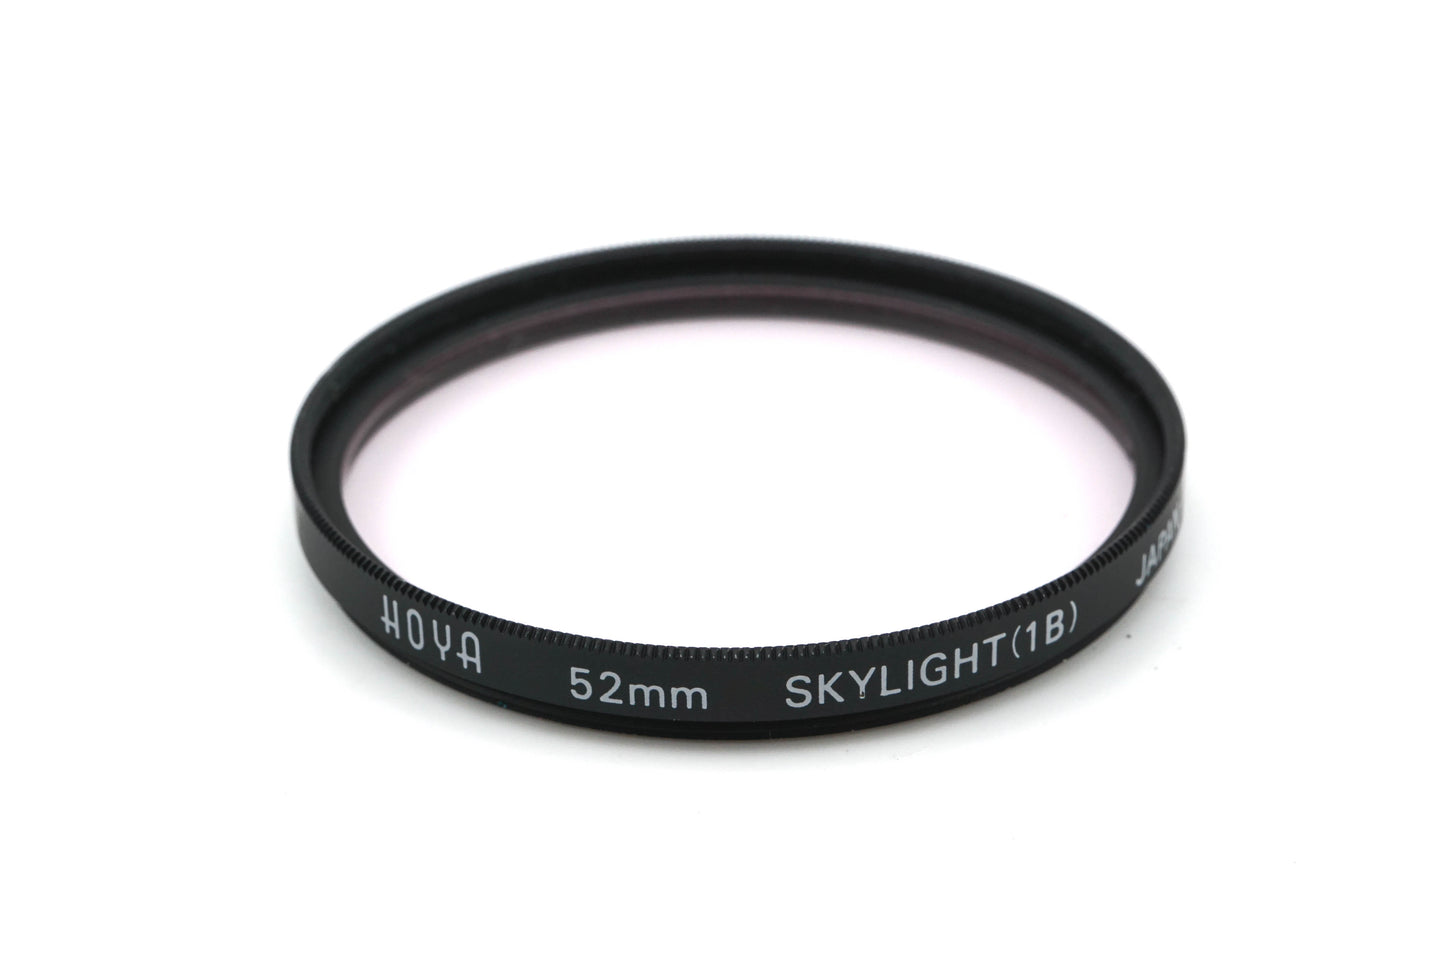 Hoya 52mm Skylight Filter 1B